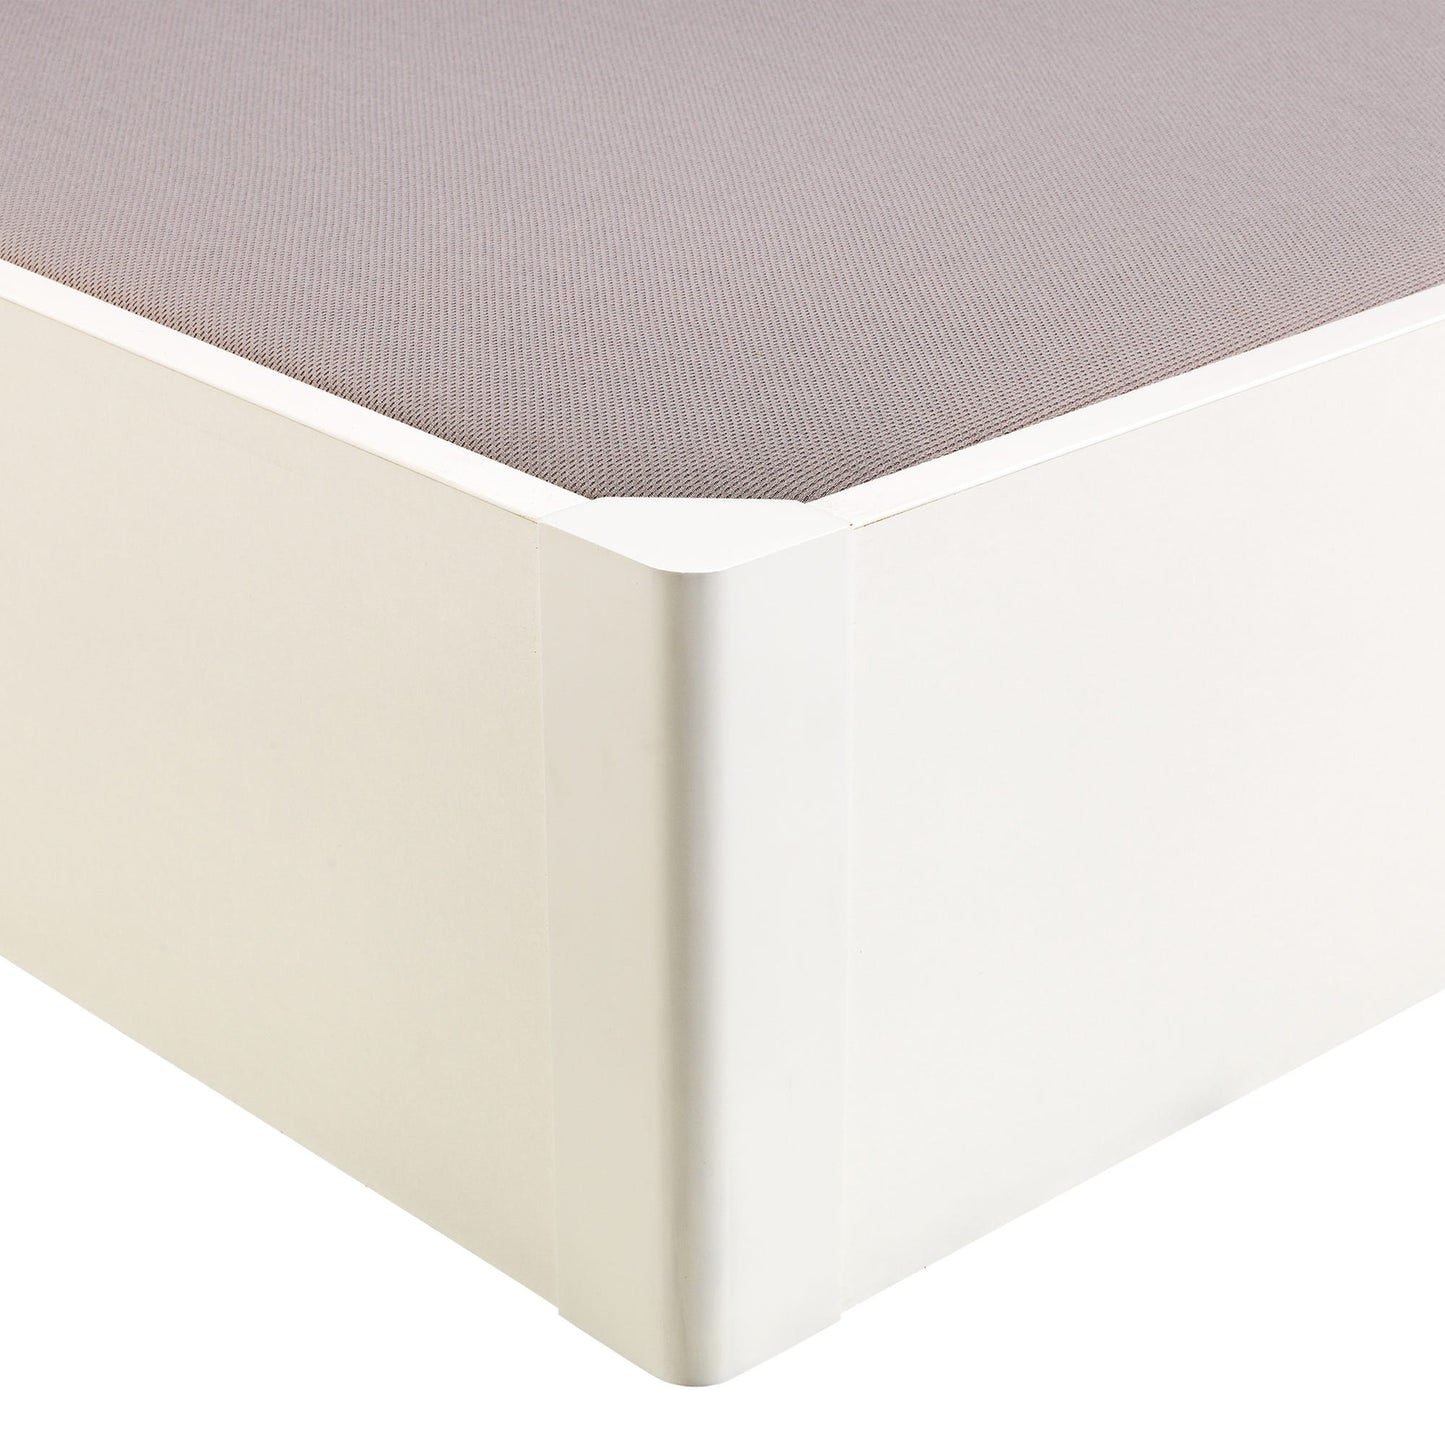 Canapé abatible de madera tapa única de color blanco - DESIGN - 135x200